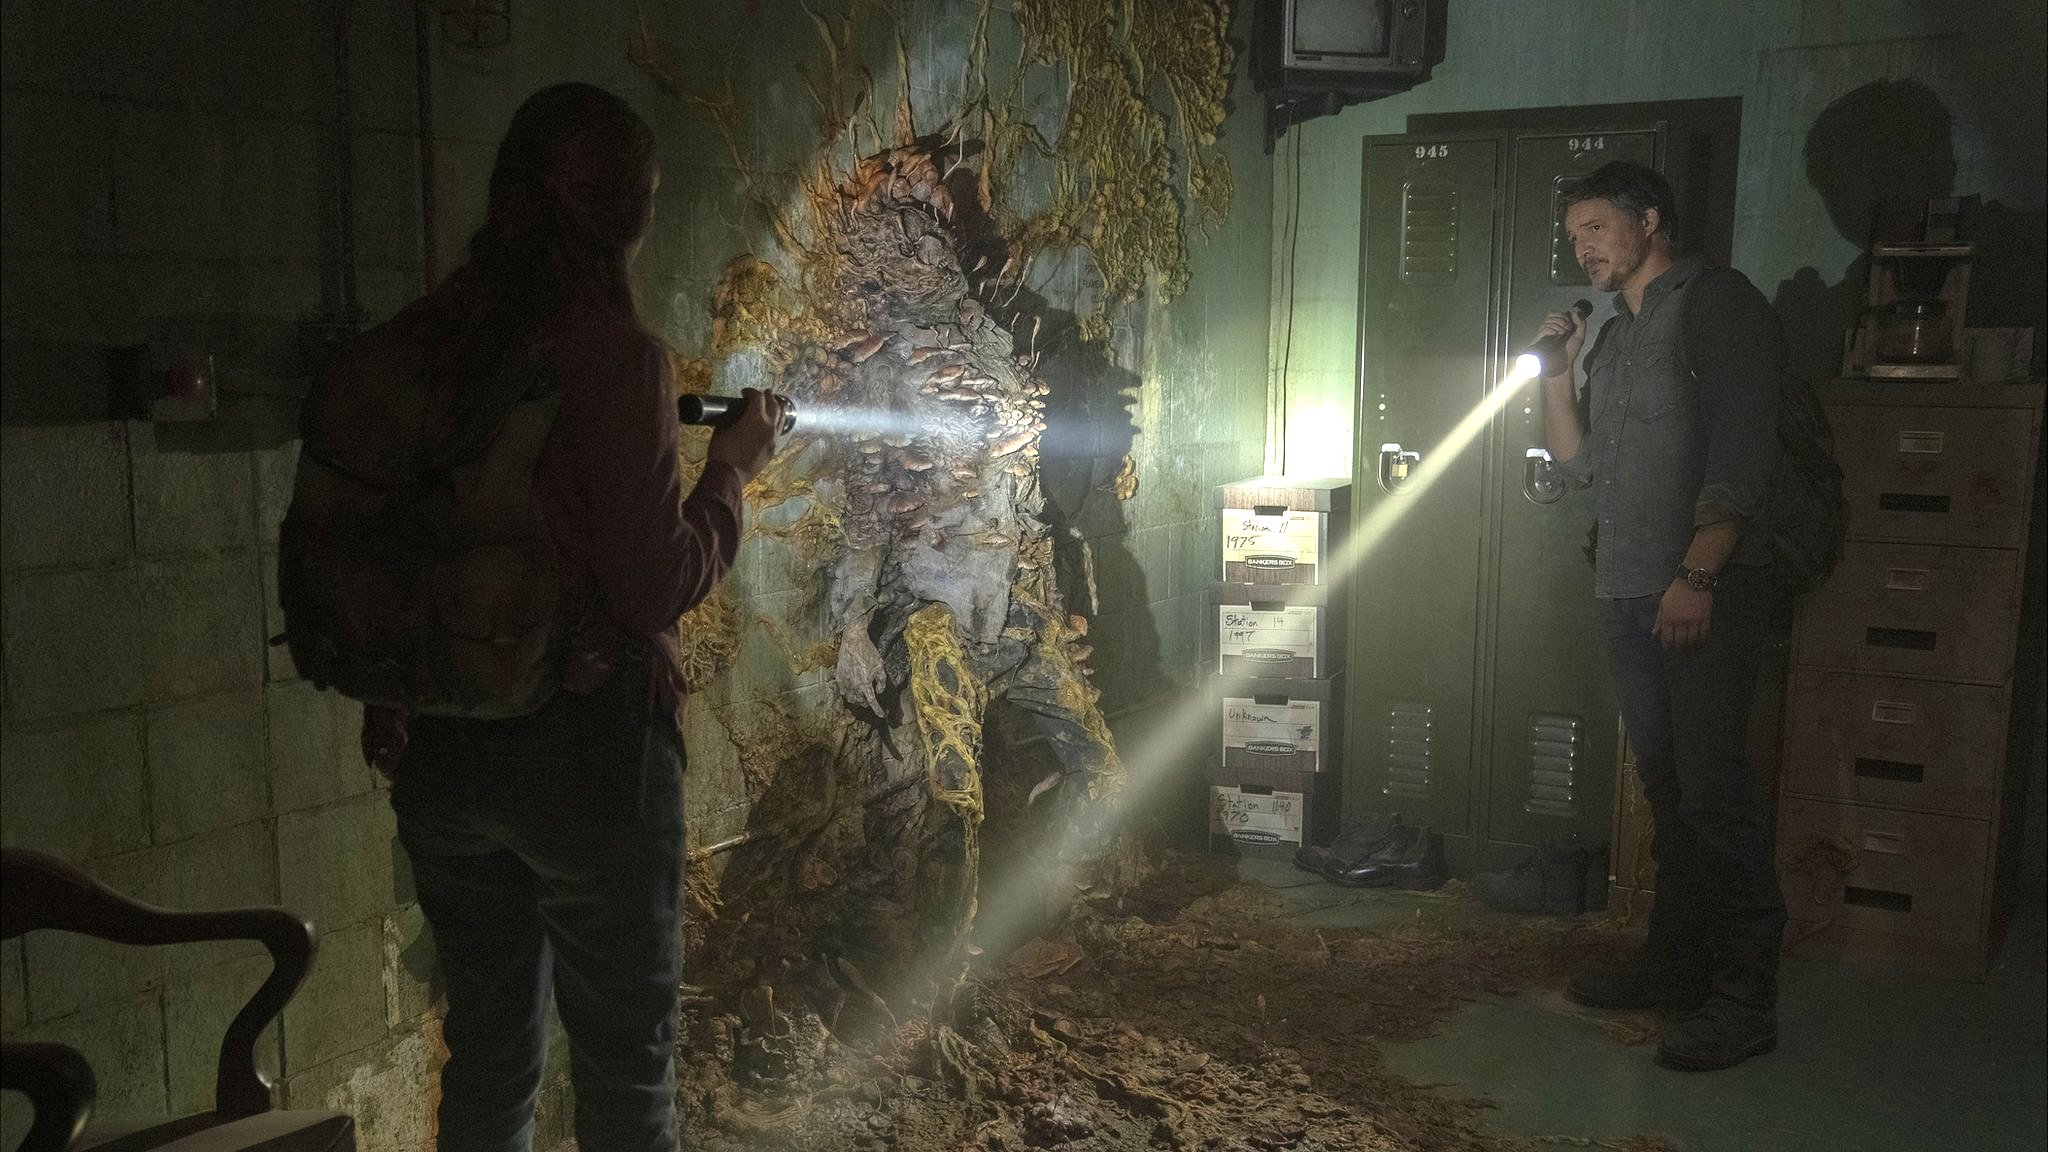 The Last of Us: que horas estreia a série no HBO Max? Saiba tudo